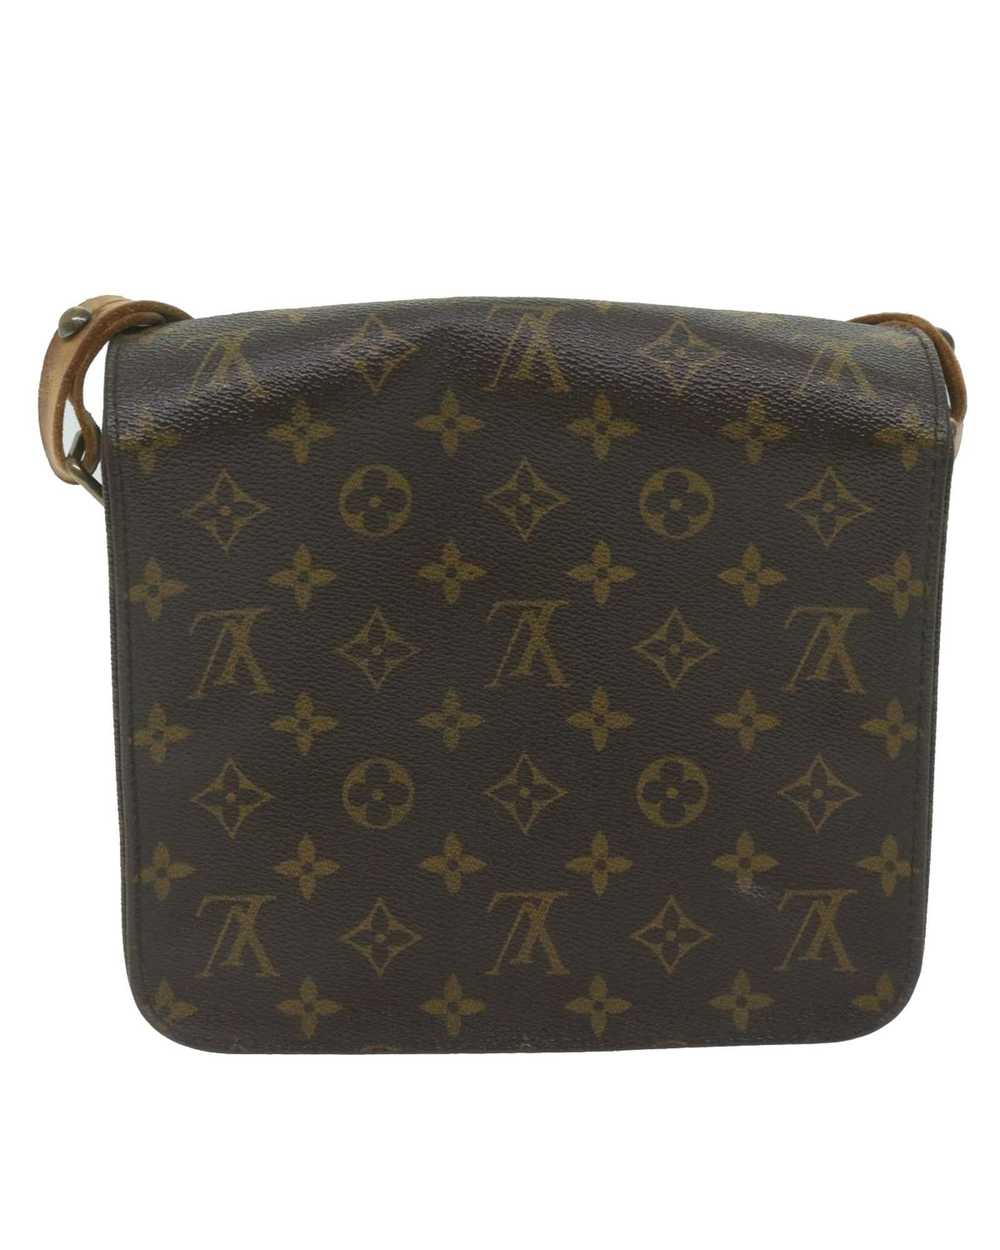 Louis Vuitton Iconic Monogram Canvas Shoulder Bag - image 3